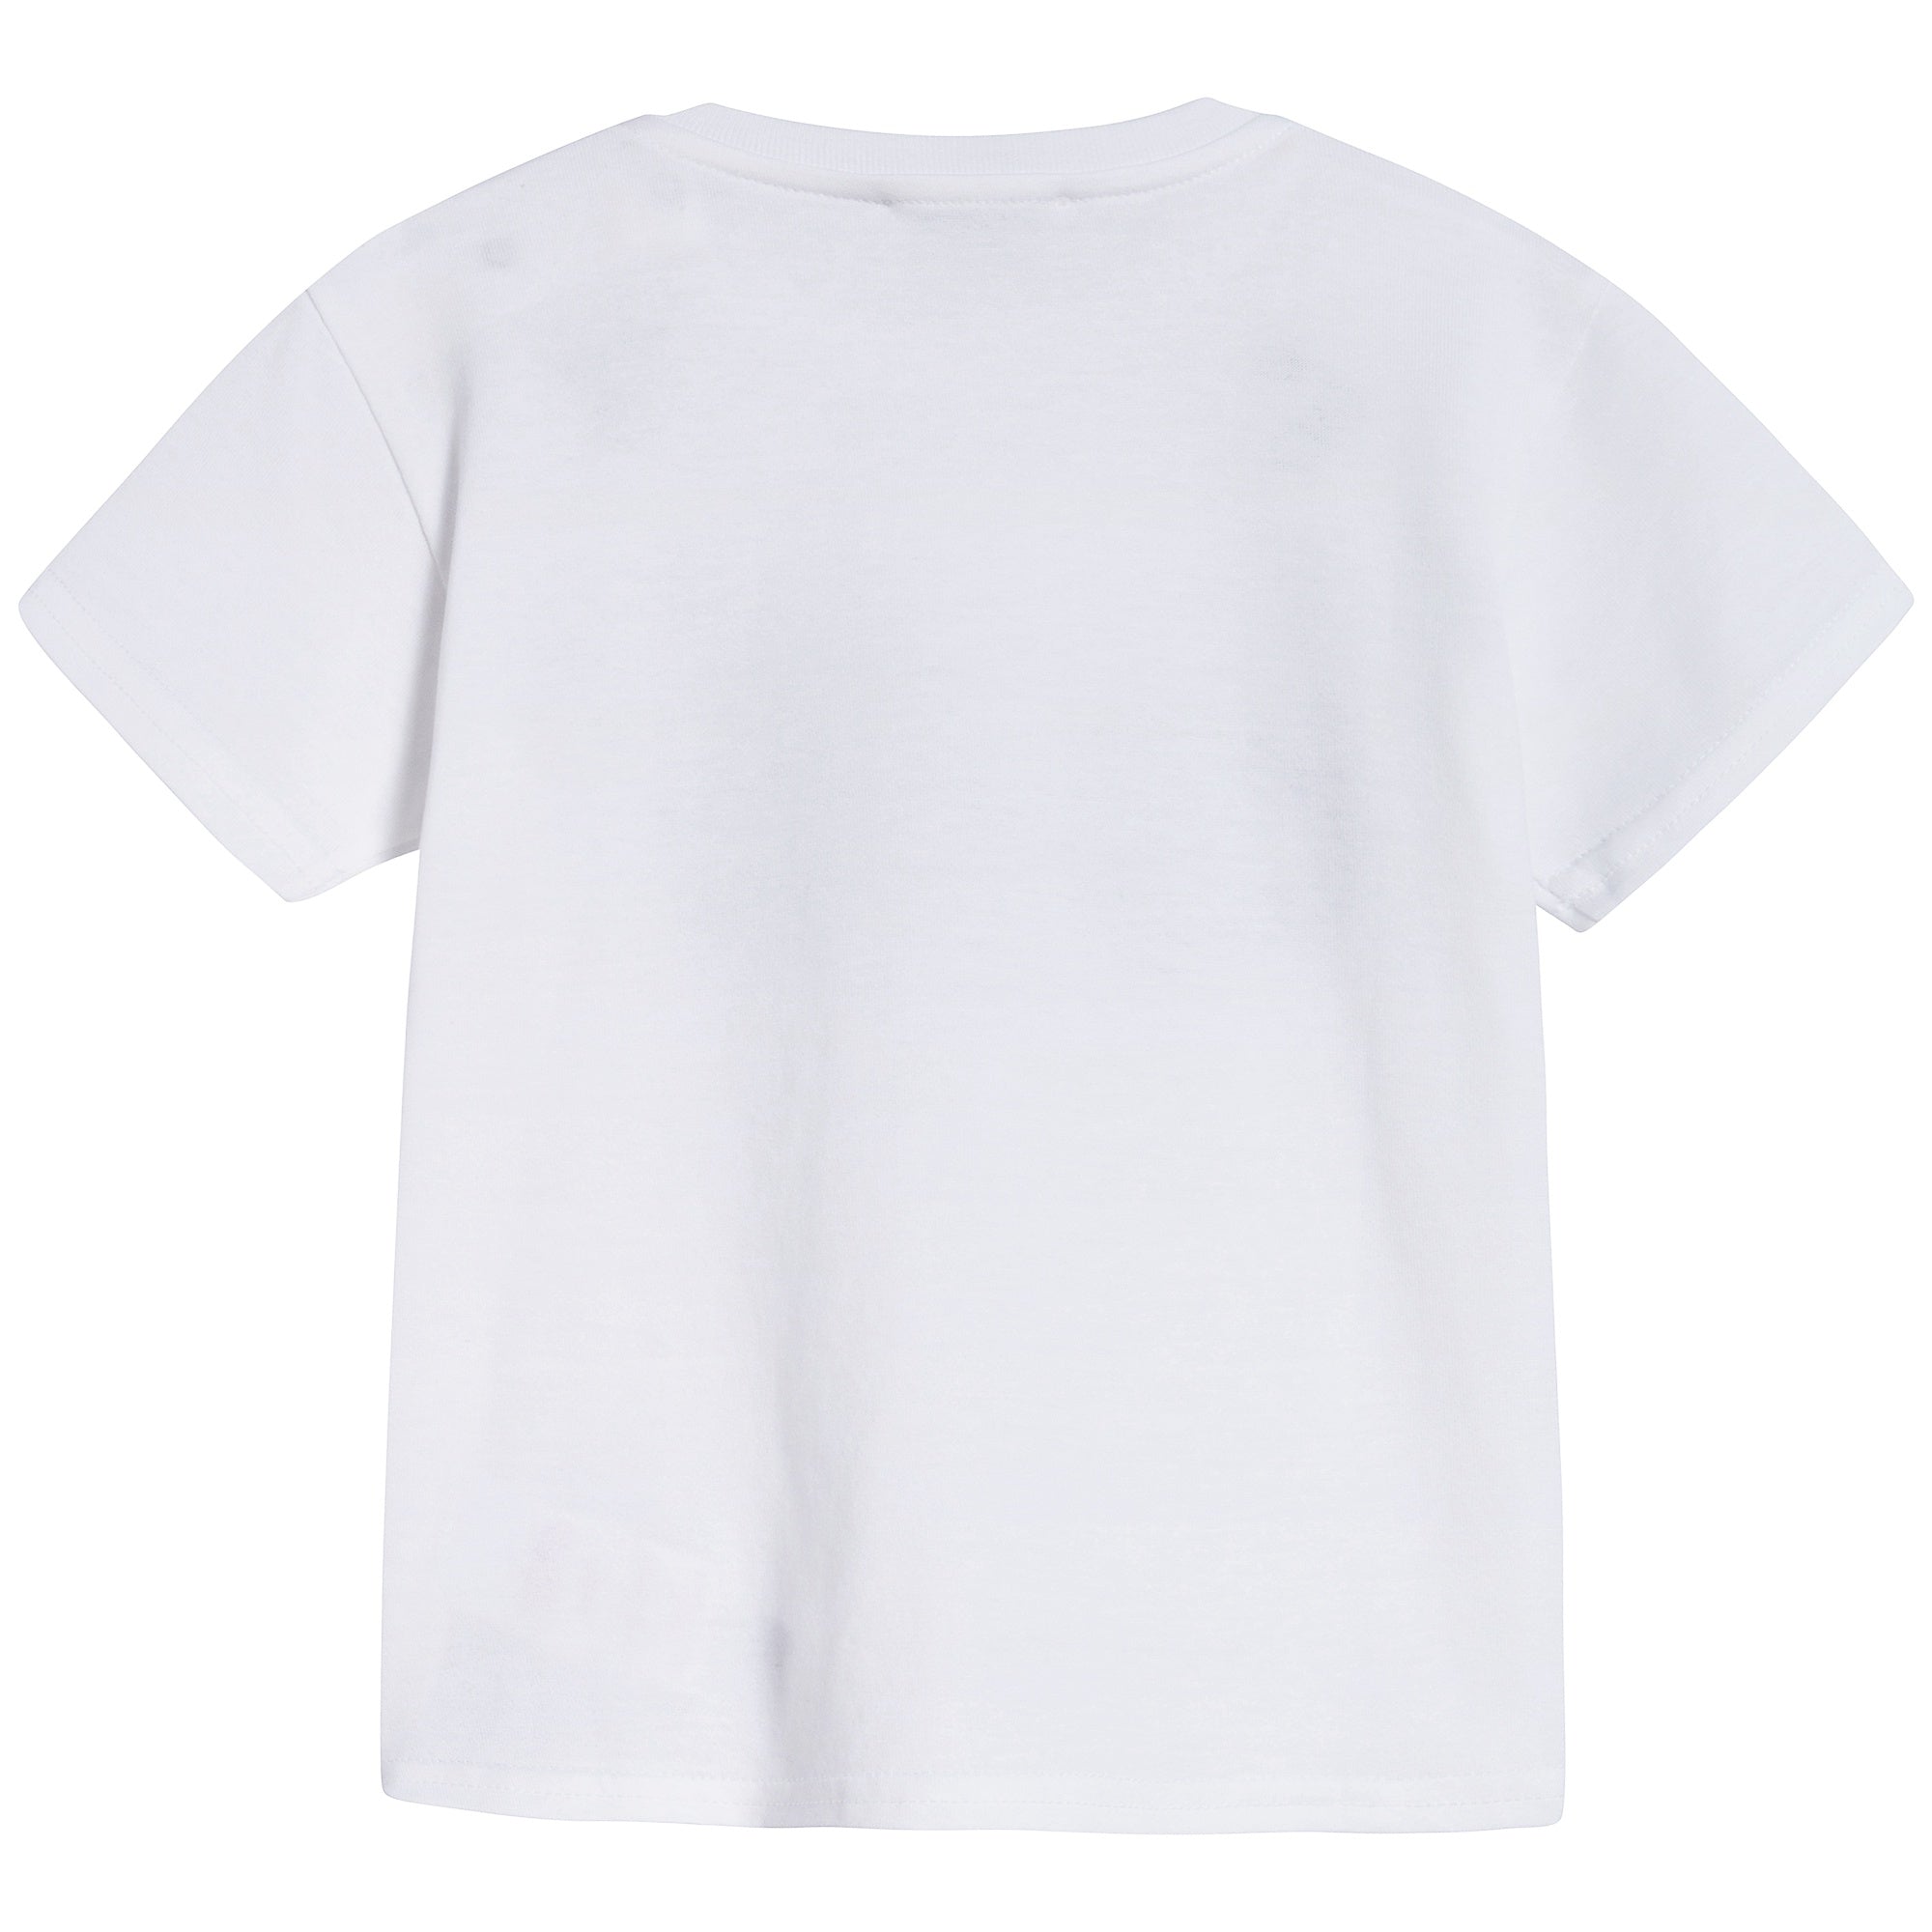 Baby Boys White "DG Family" Cotton T-shirt